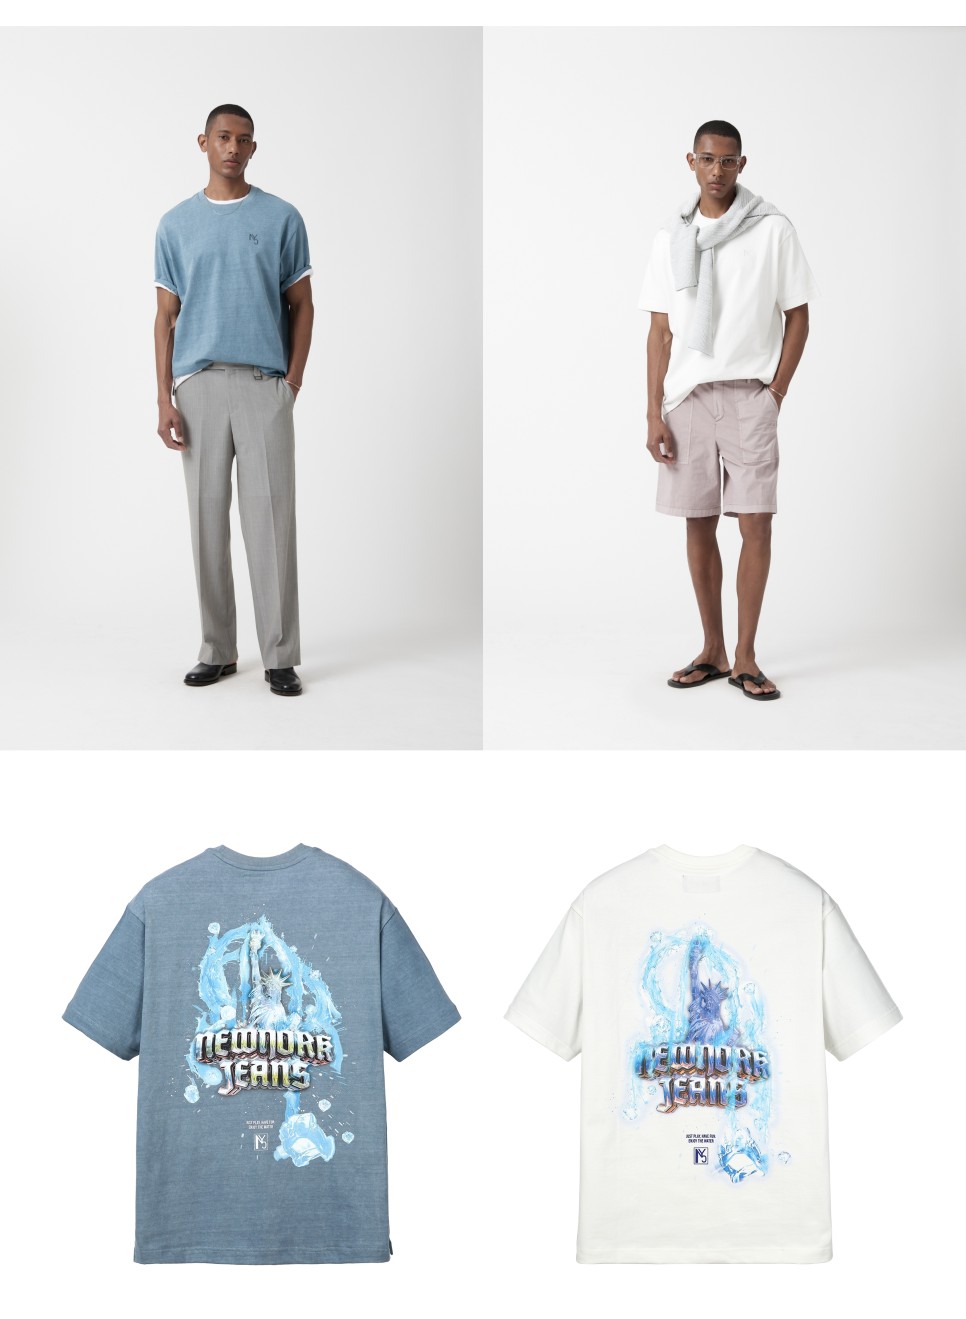 질스튜어트 뉴욕 남성 여름 반팔 셔츠 코디, 남자 블루종 점퍼까지! 가디건도 멋진 브랜드